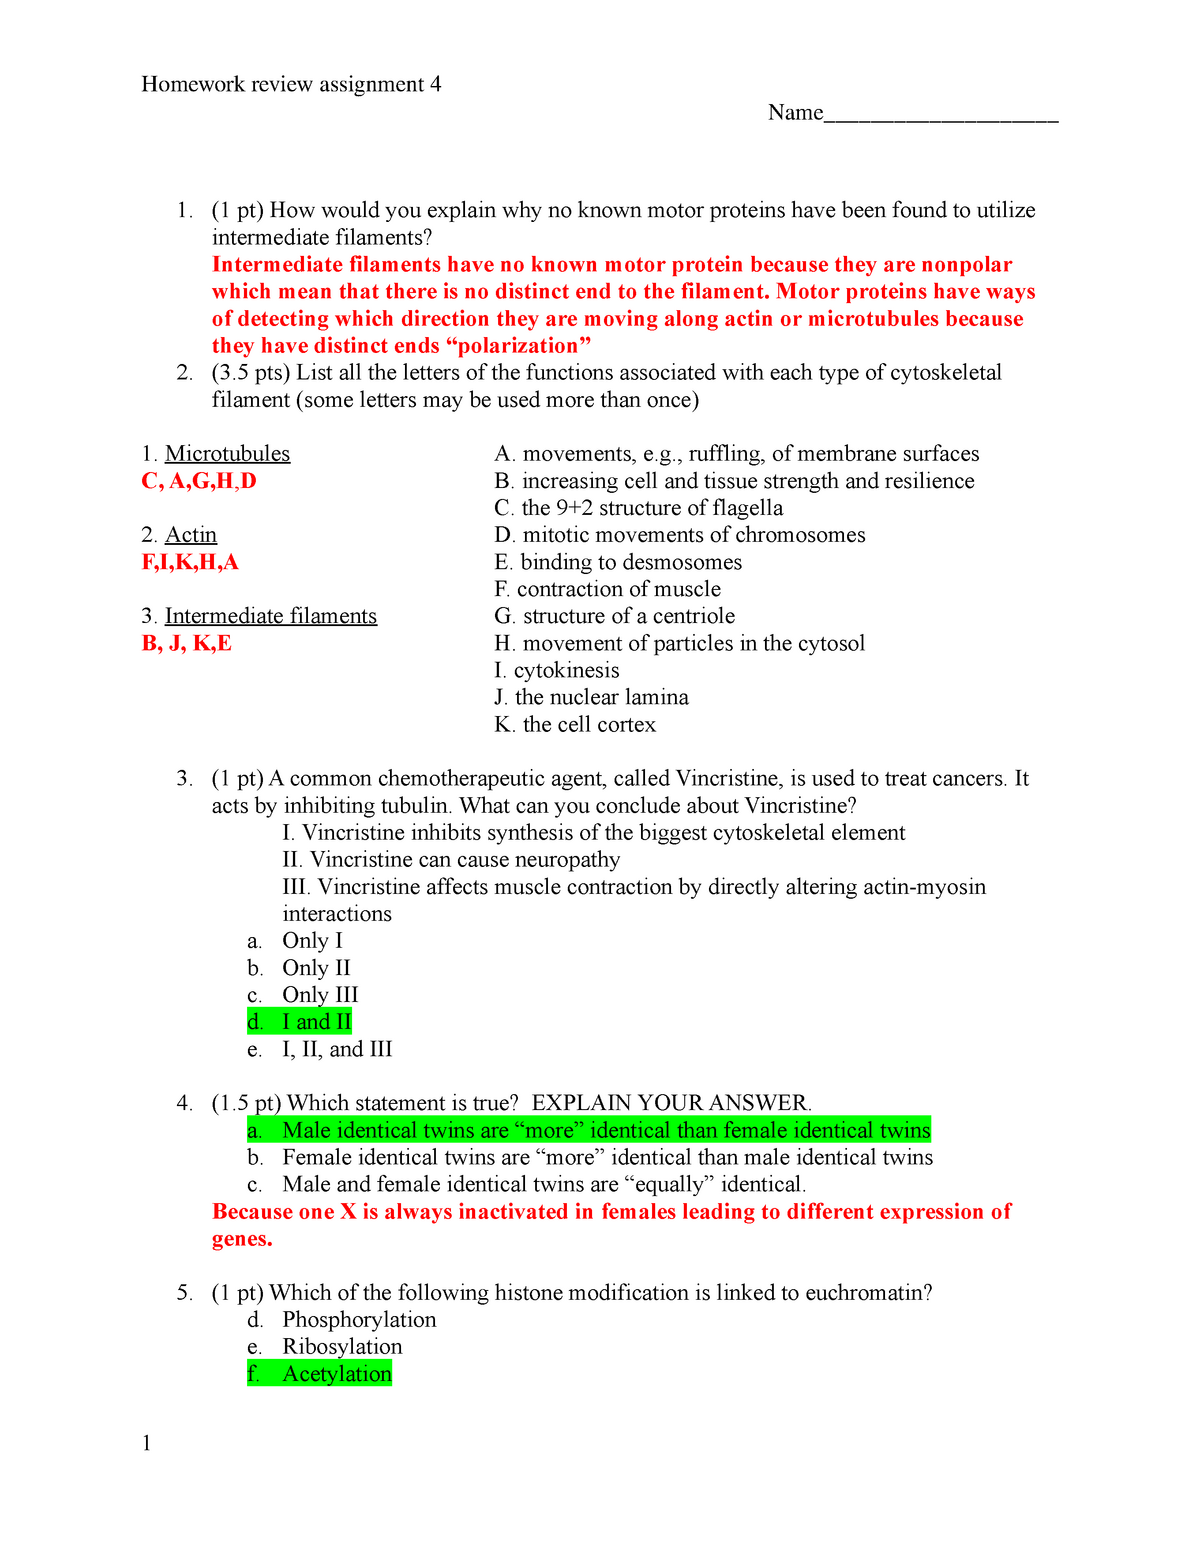 Homework 4 Assignment Studocu